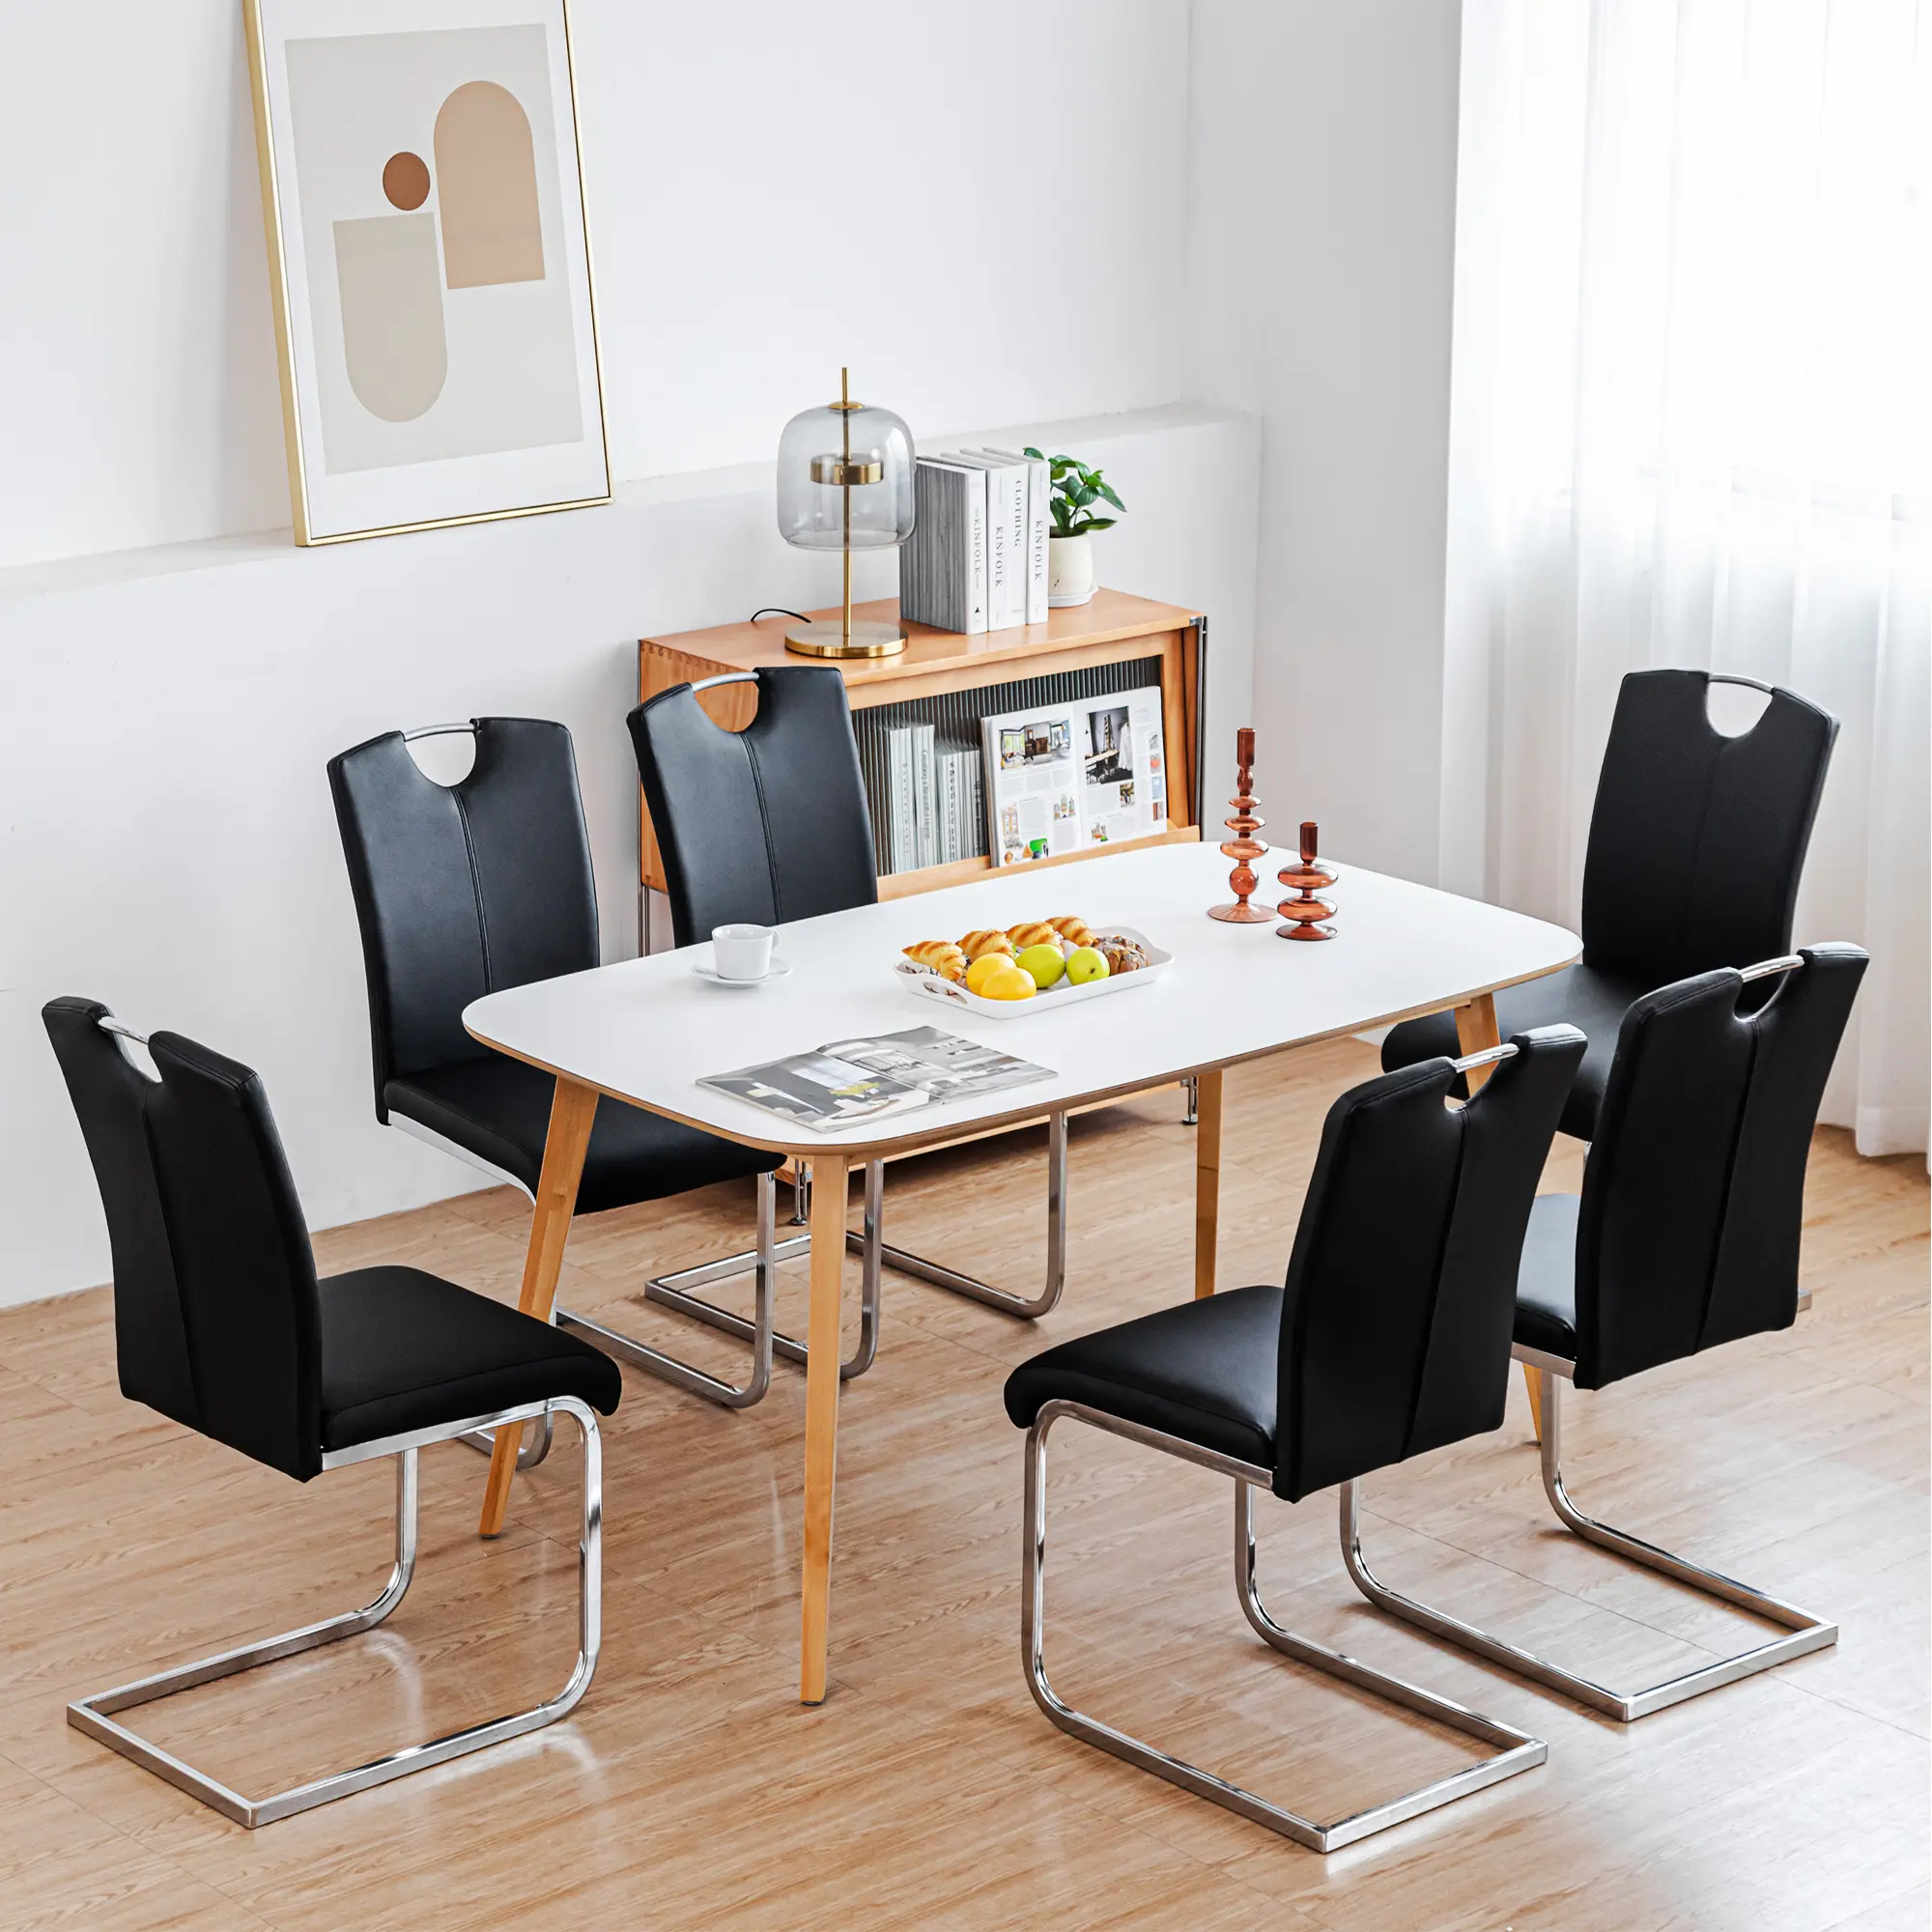 https://www.wyida.com/krzeslo-boczne-zestaw-kuchni-i-jadalni-ze-sztucznej-skóry-krzeslo-soft-seating-product/